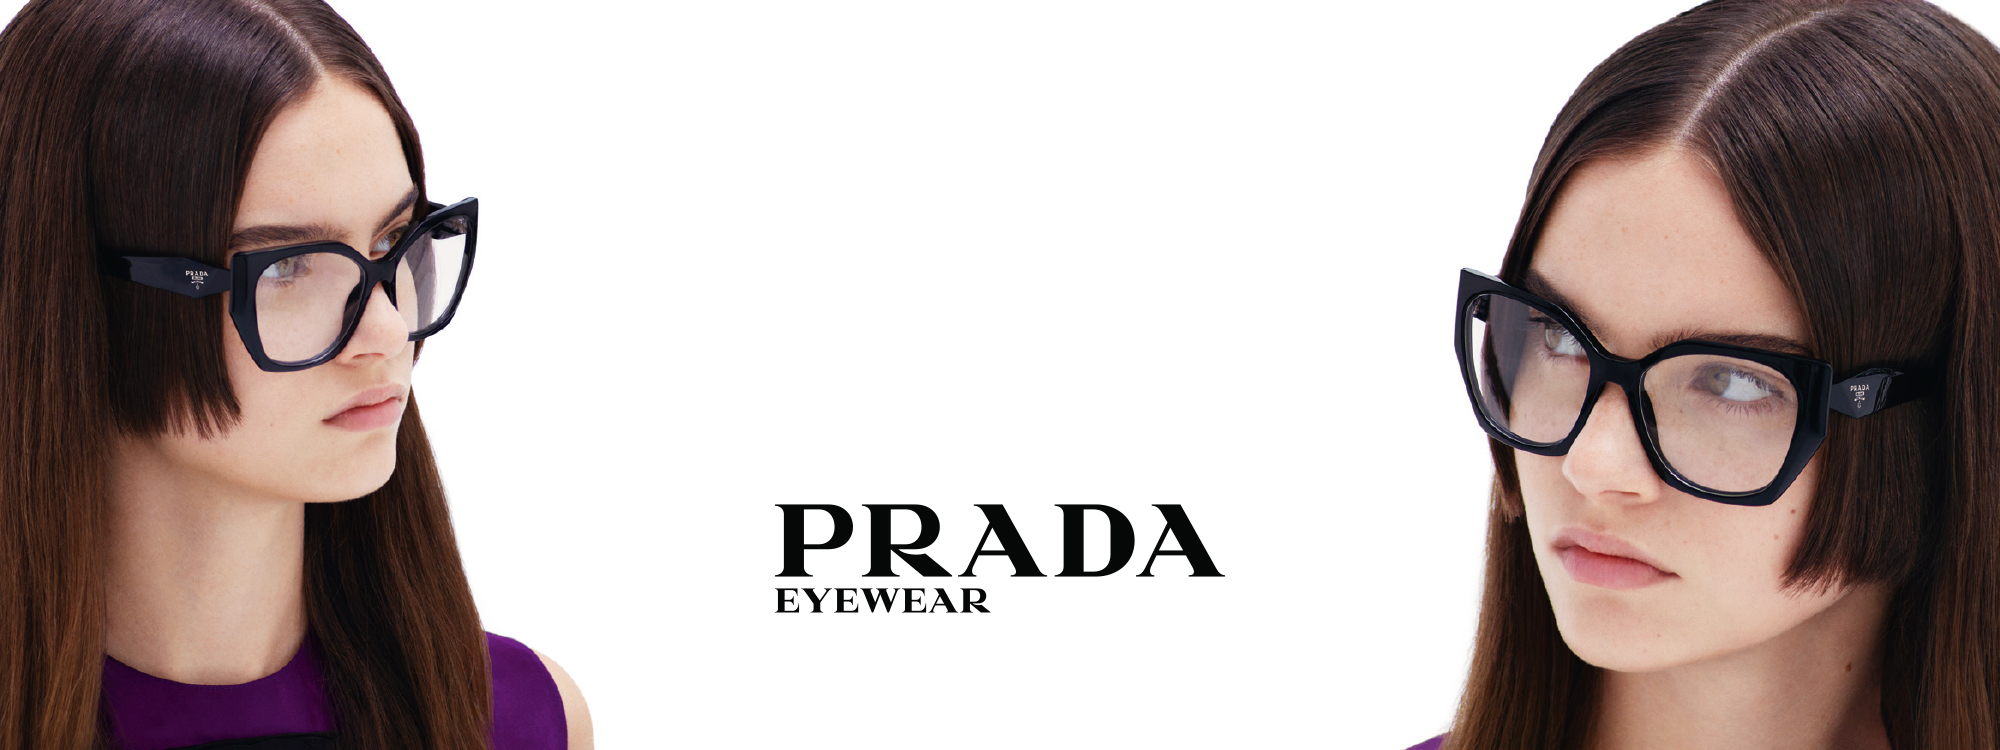 Vuil onwettig chaos Prada - The Optic Shop